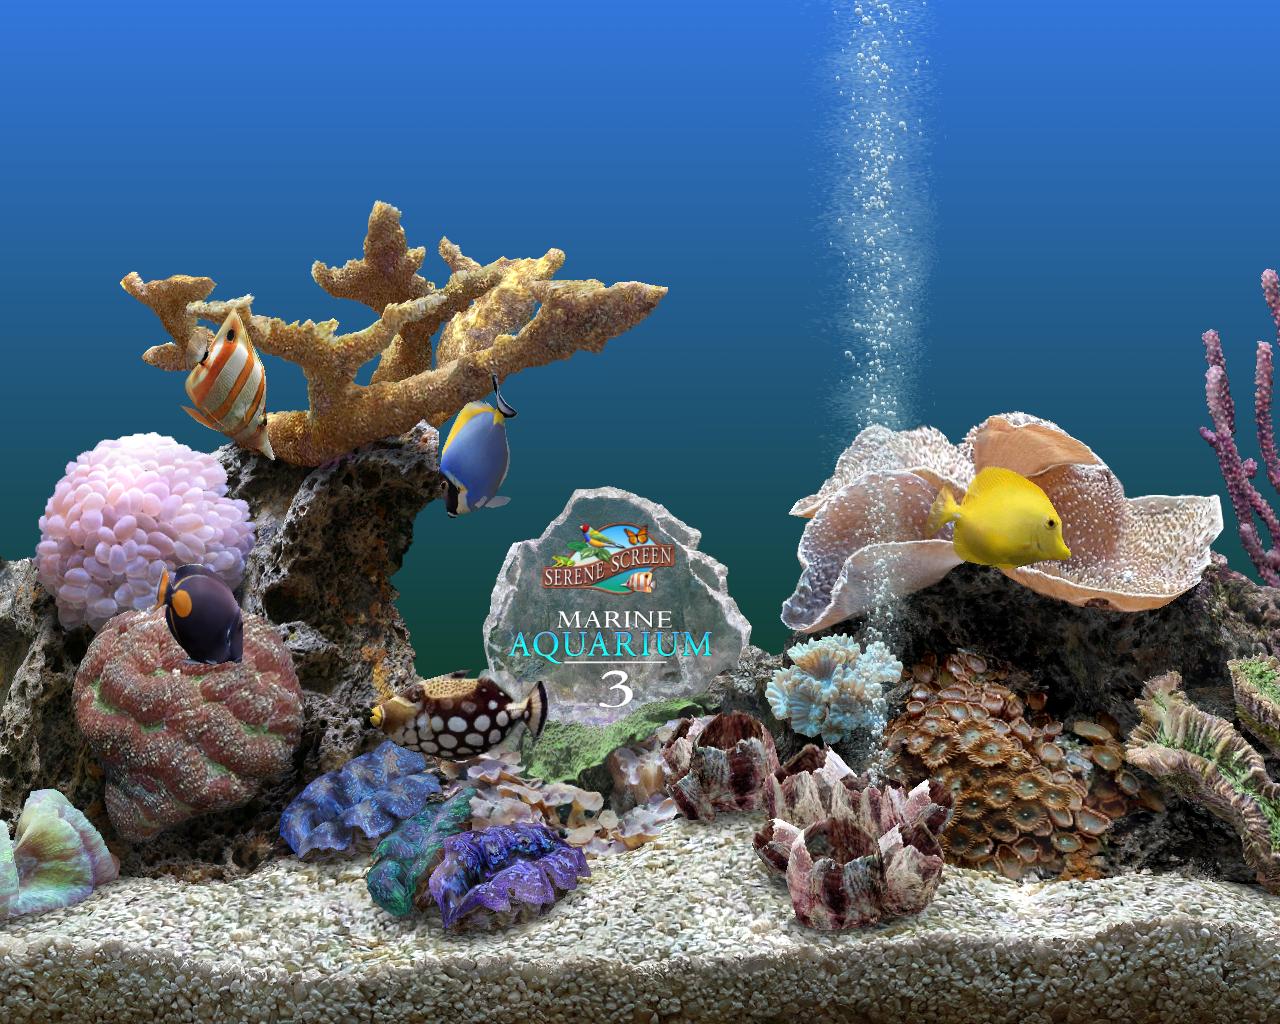 marine aquarium screensaver 4k uhd